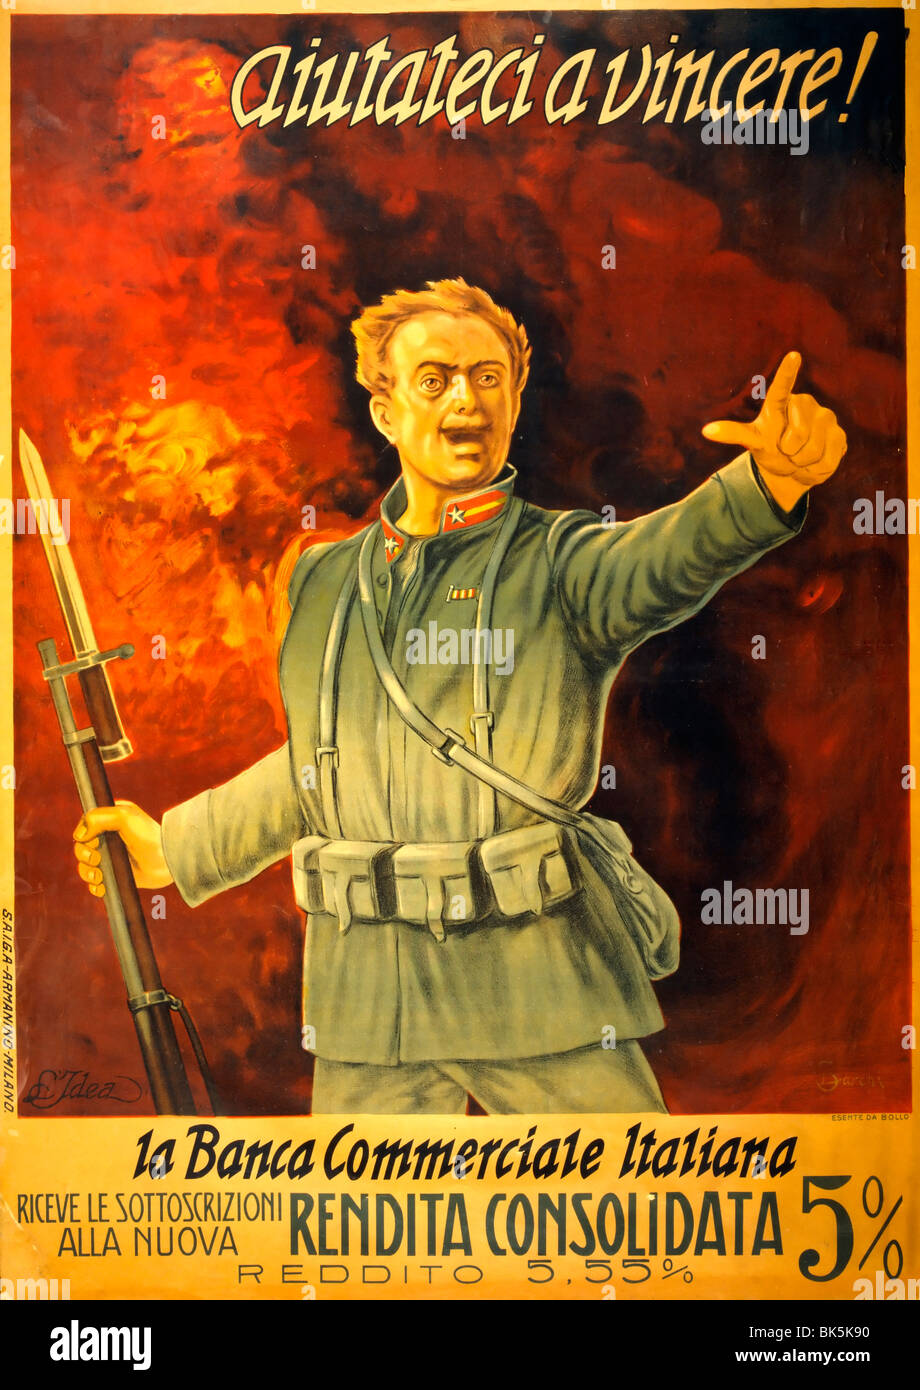 Aiutateci a vincere! la Banca commerciale Italiana. Help us win - Italian Commercial Bank - Italian World War I Bond Poster Stock Photo